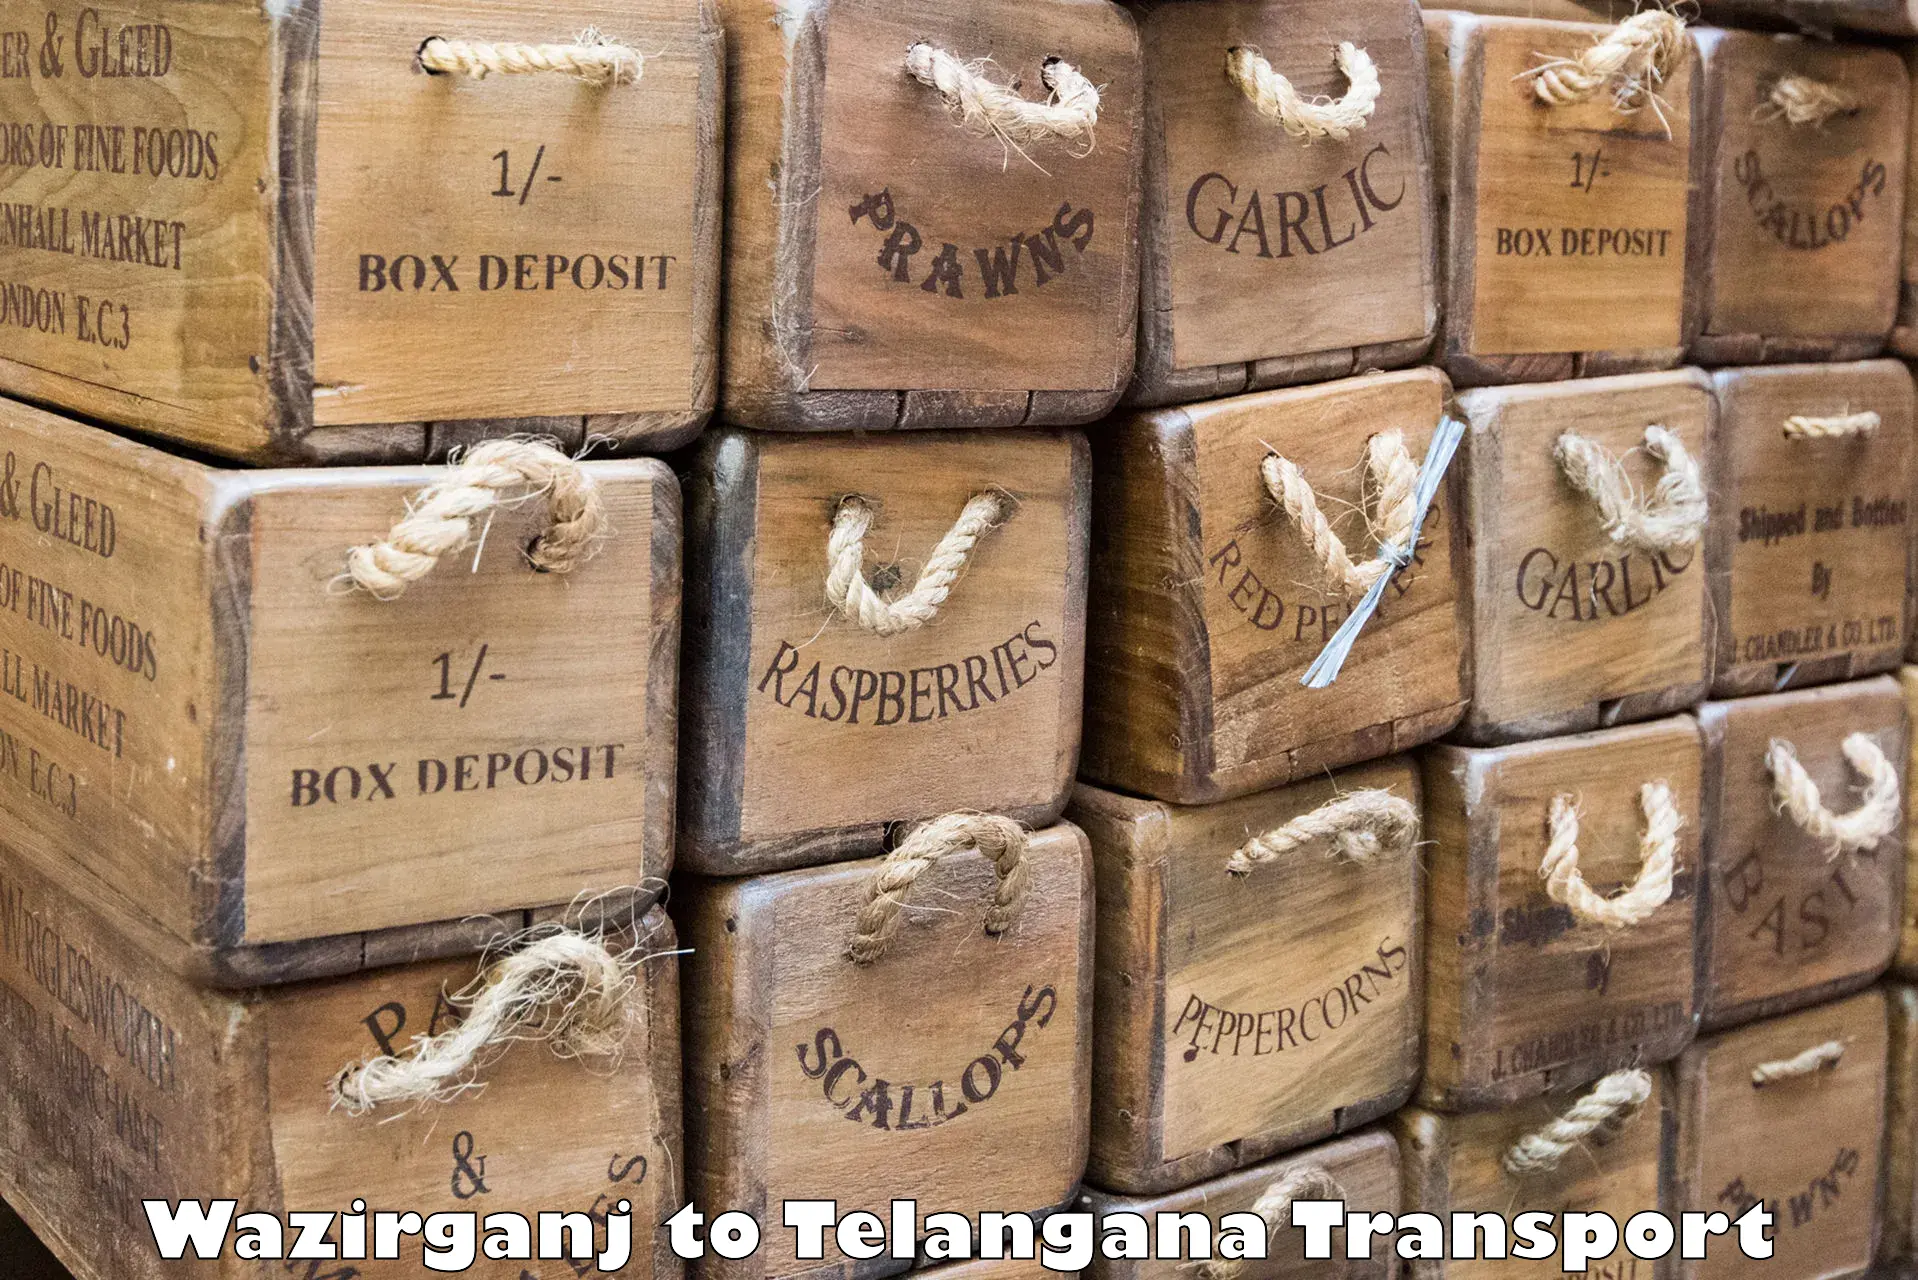 Container transport service Wazirganj to Kakeshwaram